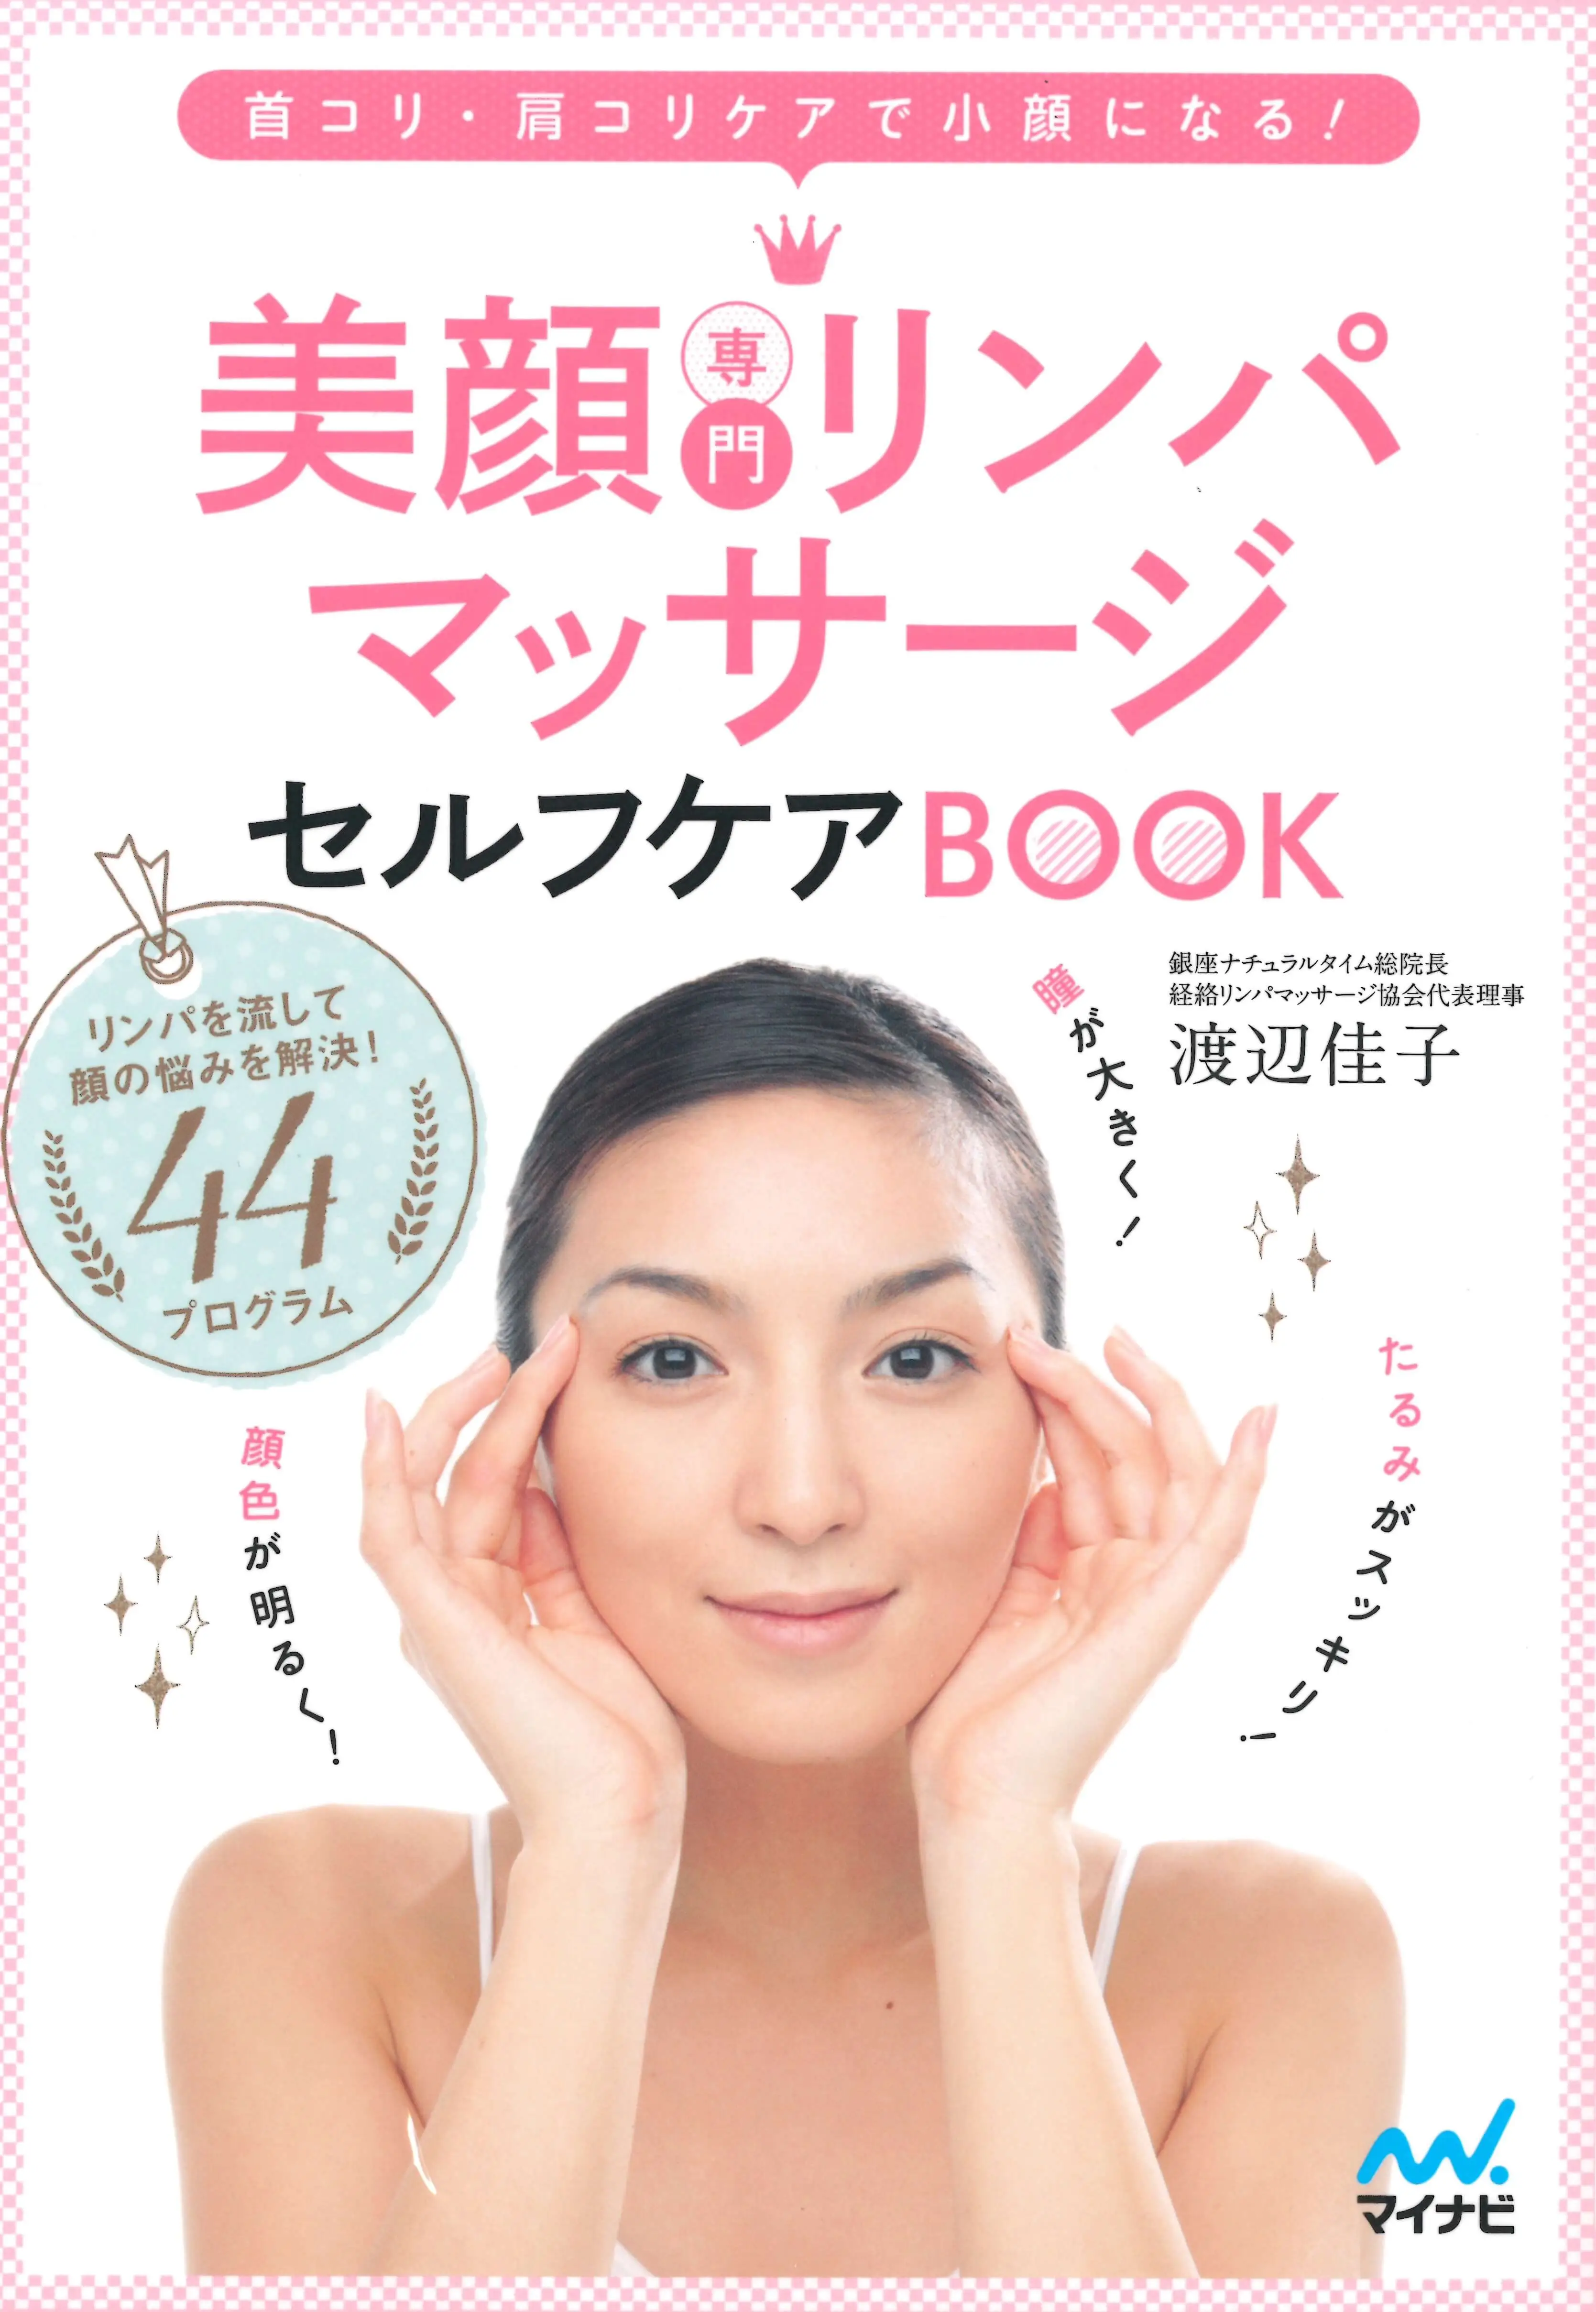 美顔専門リンパマッサージセルフケアBook